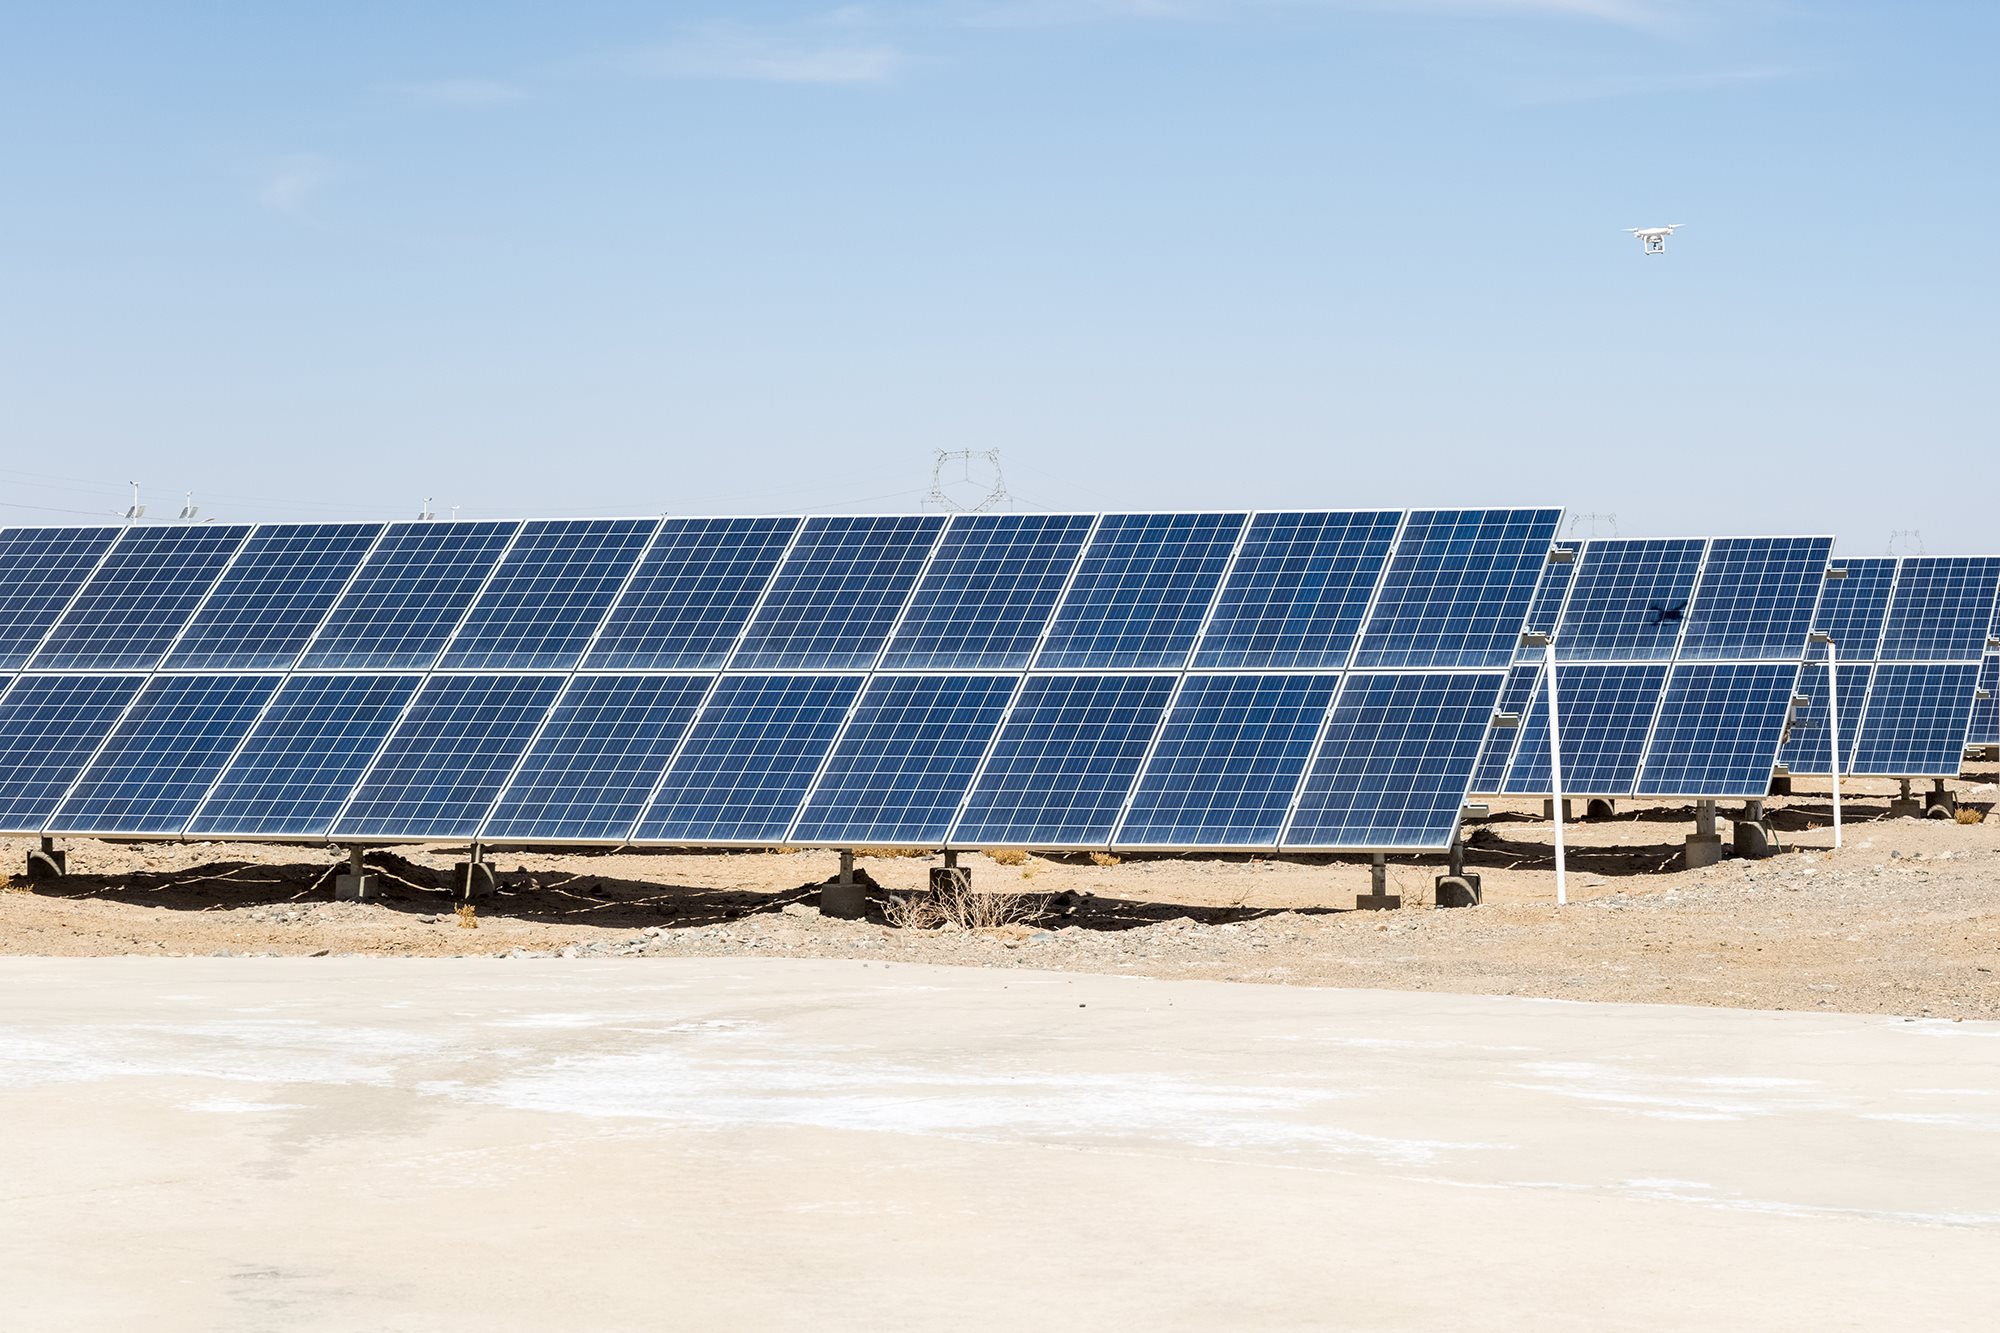 Solar panels in the Gobi desert